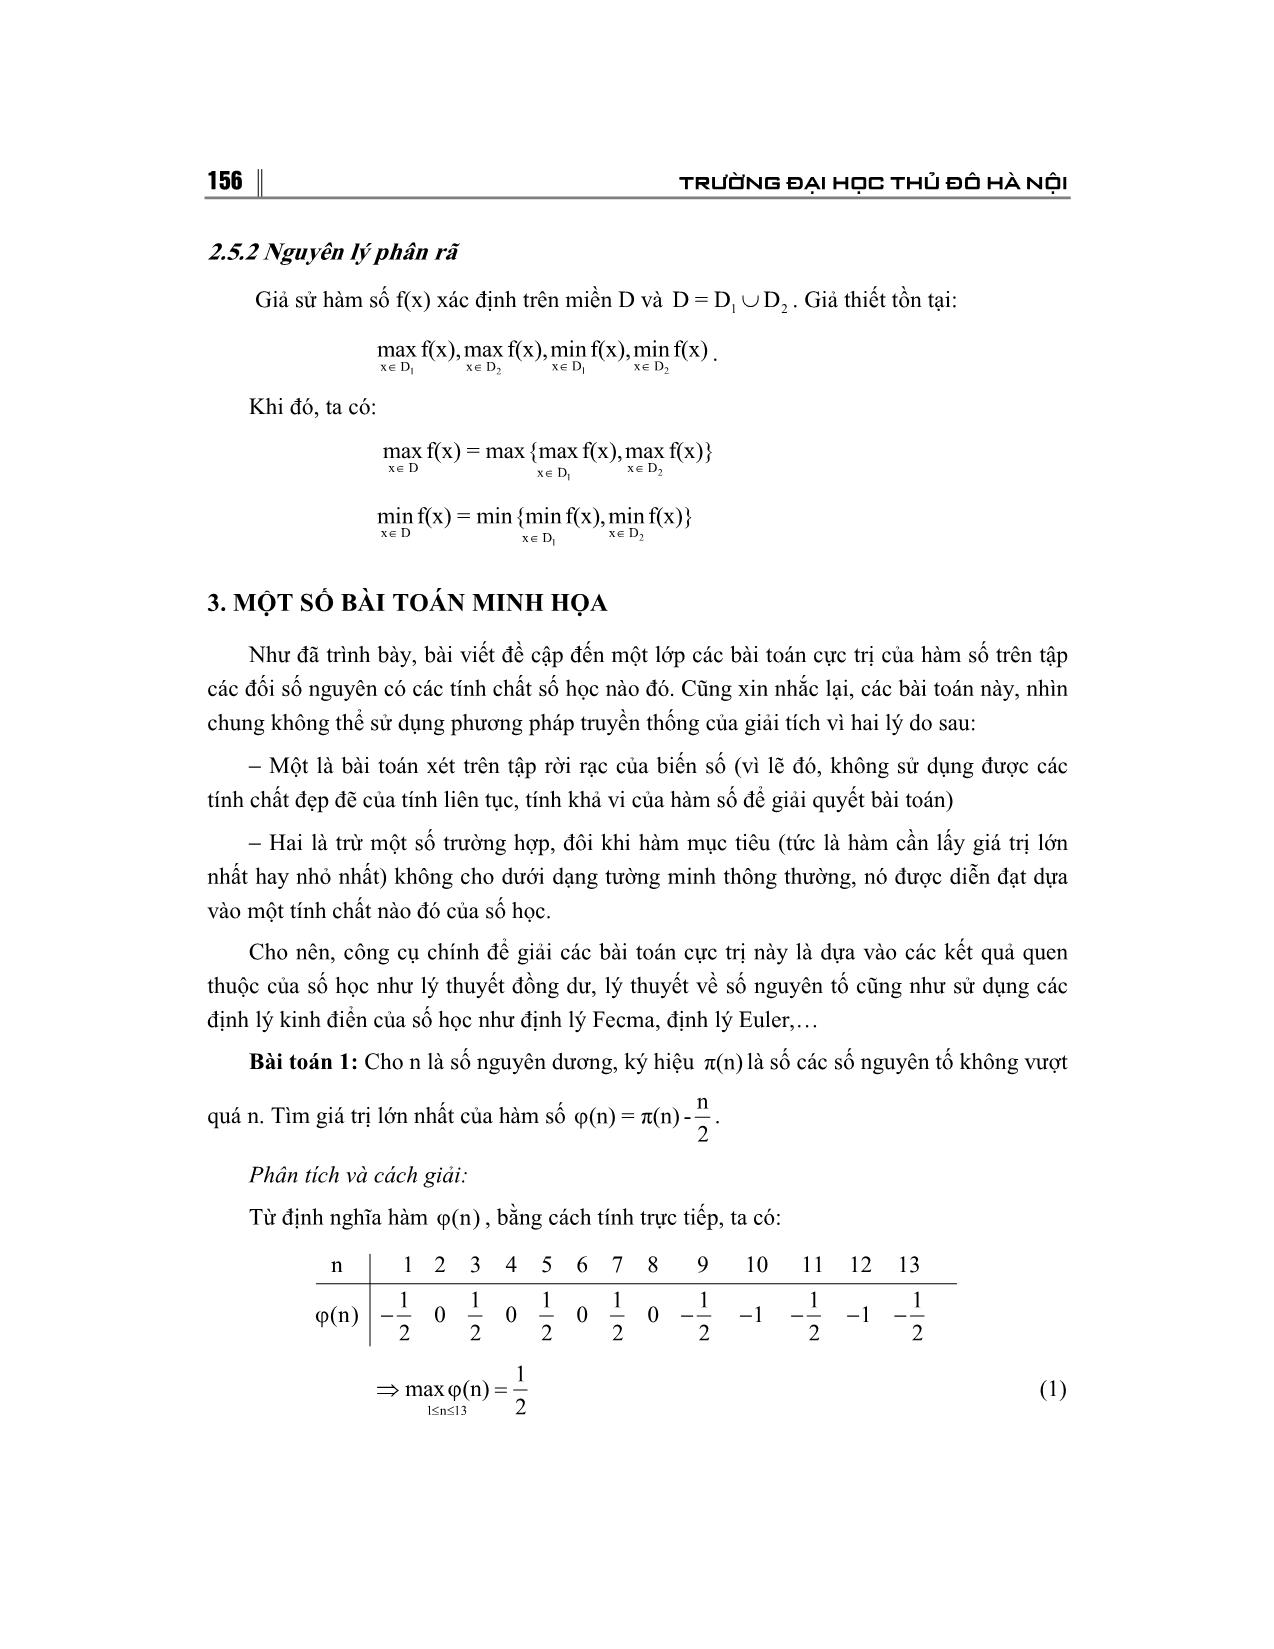 Sử dụng tính nguyên tố để giải bài toán cực trị trên tập đối số nguyên trang 4